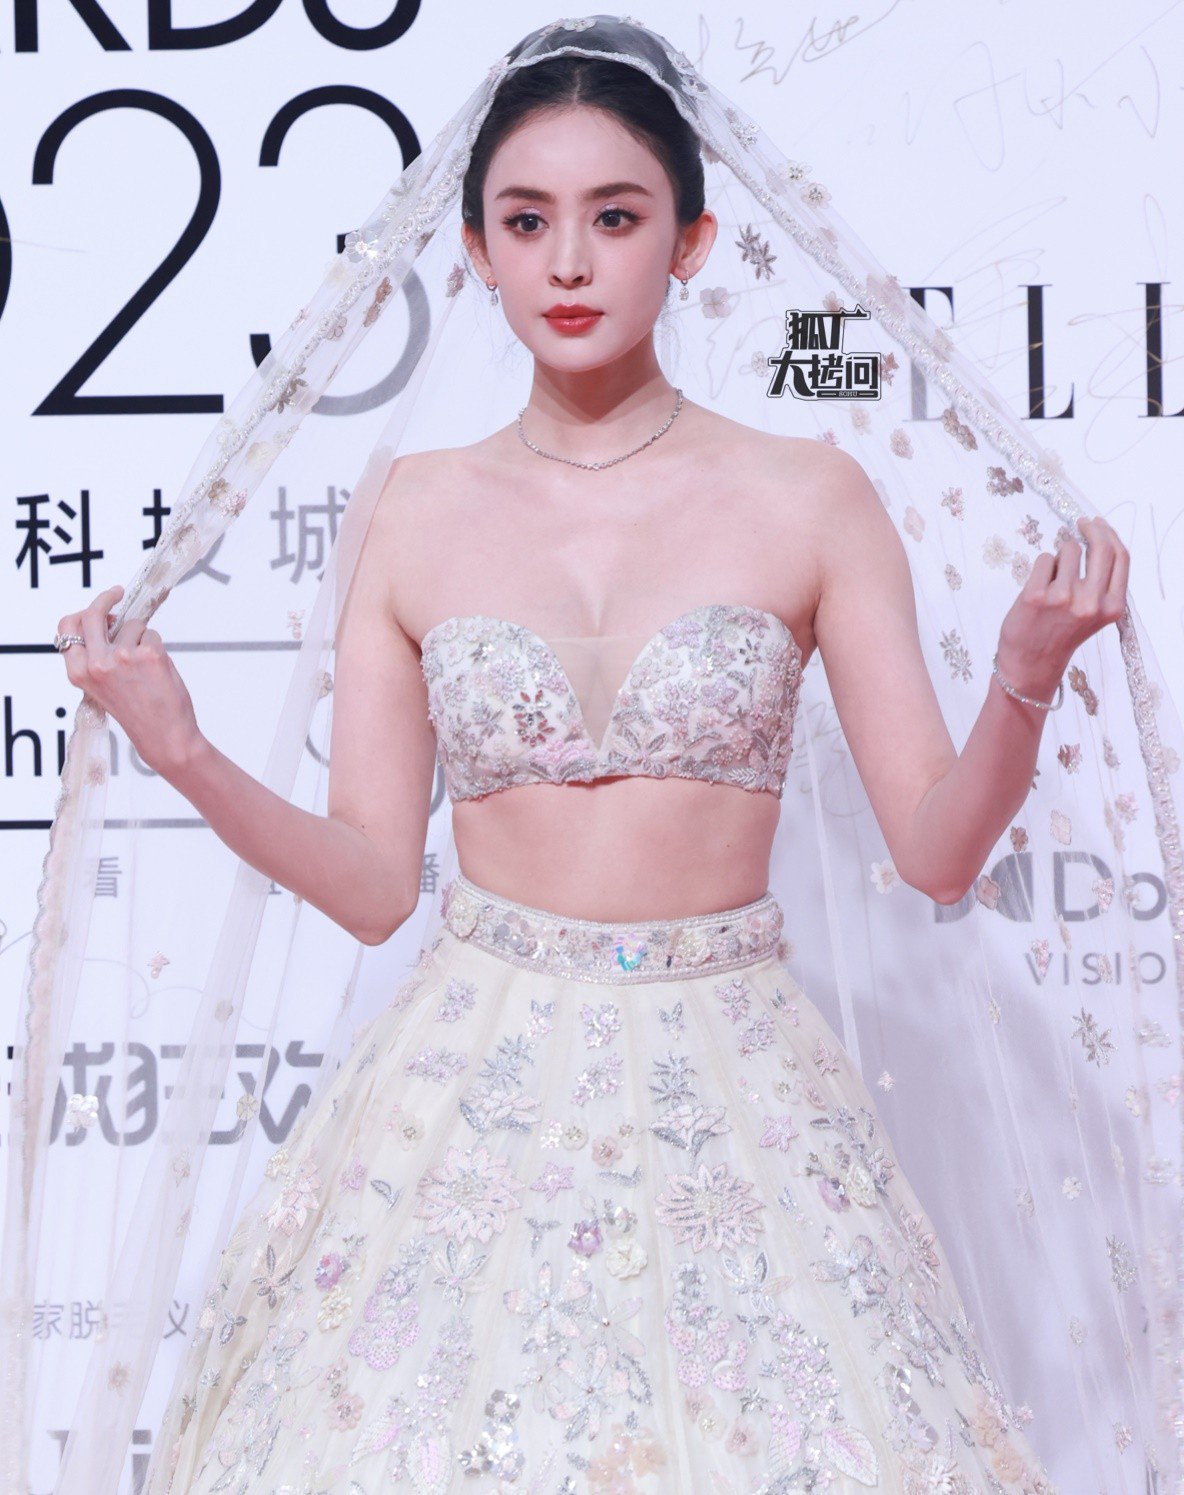 "Tiên nữ" tộc người đẹp nhất Trung Quốc lên top 1 tìm kiếm vì mặc khoe cơ thể - 7